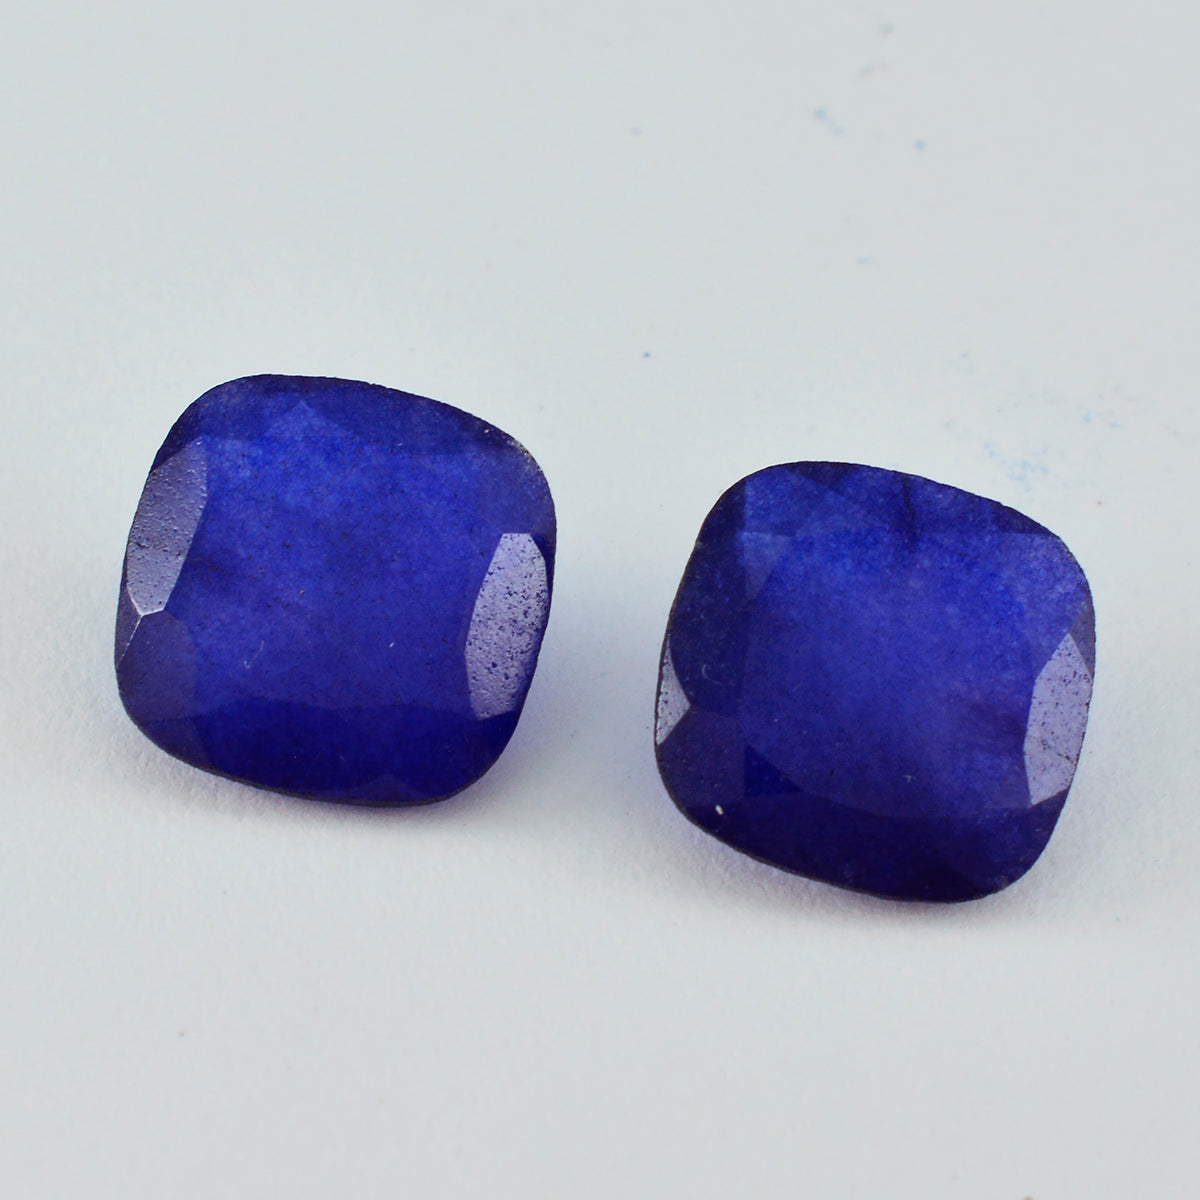 Riyogems 1 Stück echter blauer Jaspis, facettiert, 14 x 14 mm, Kissenform, wunderschöner Qualitäts-Edelstein